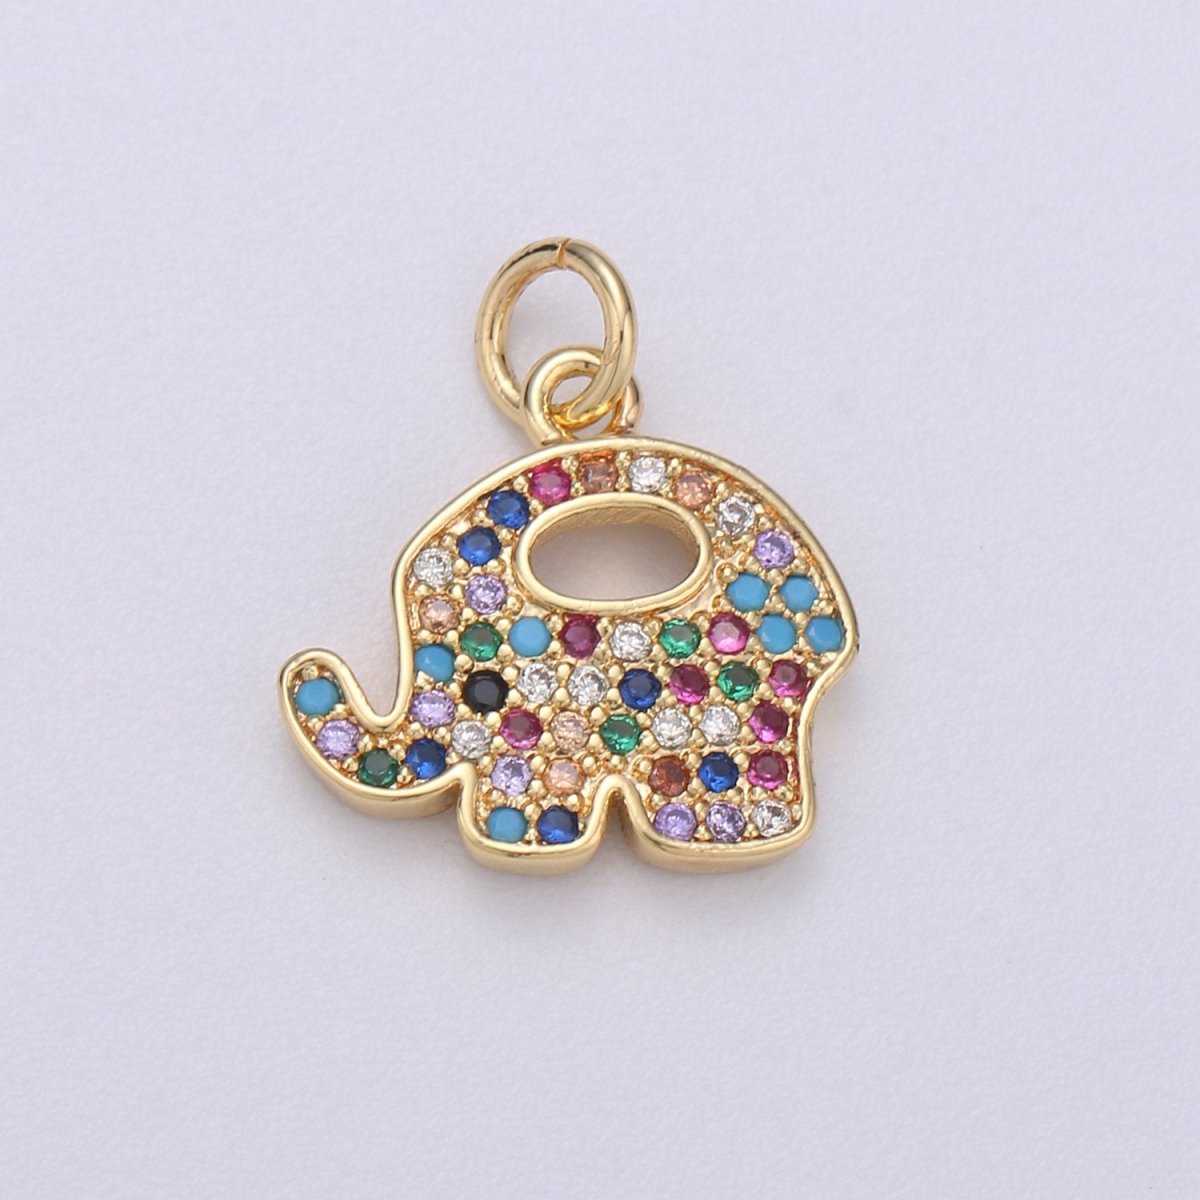 14k Gold Filled Elephant Charm Good Luck Charms, Micro Pave Deity Charm, CZ Gold Colorful Charm, Wisdom Charm Dainty Jewelry SupplyC-575 - DLUXCA